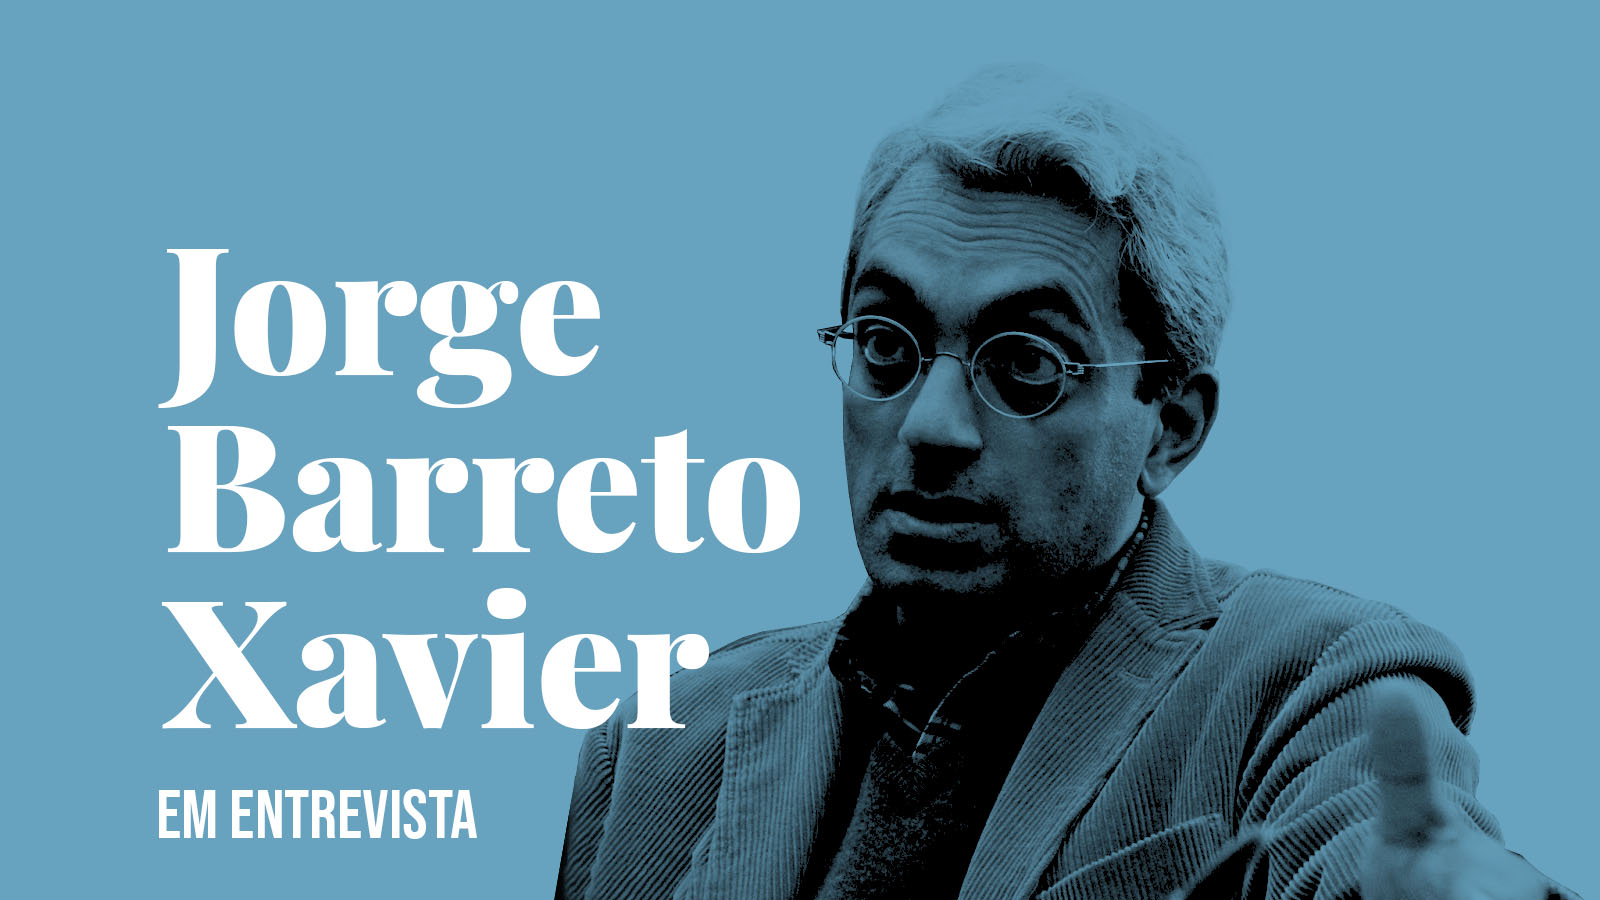 Jorge Barreto Xavier em entrevista — «A Arte deve ser outra vez política»